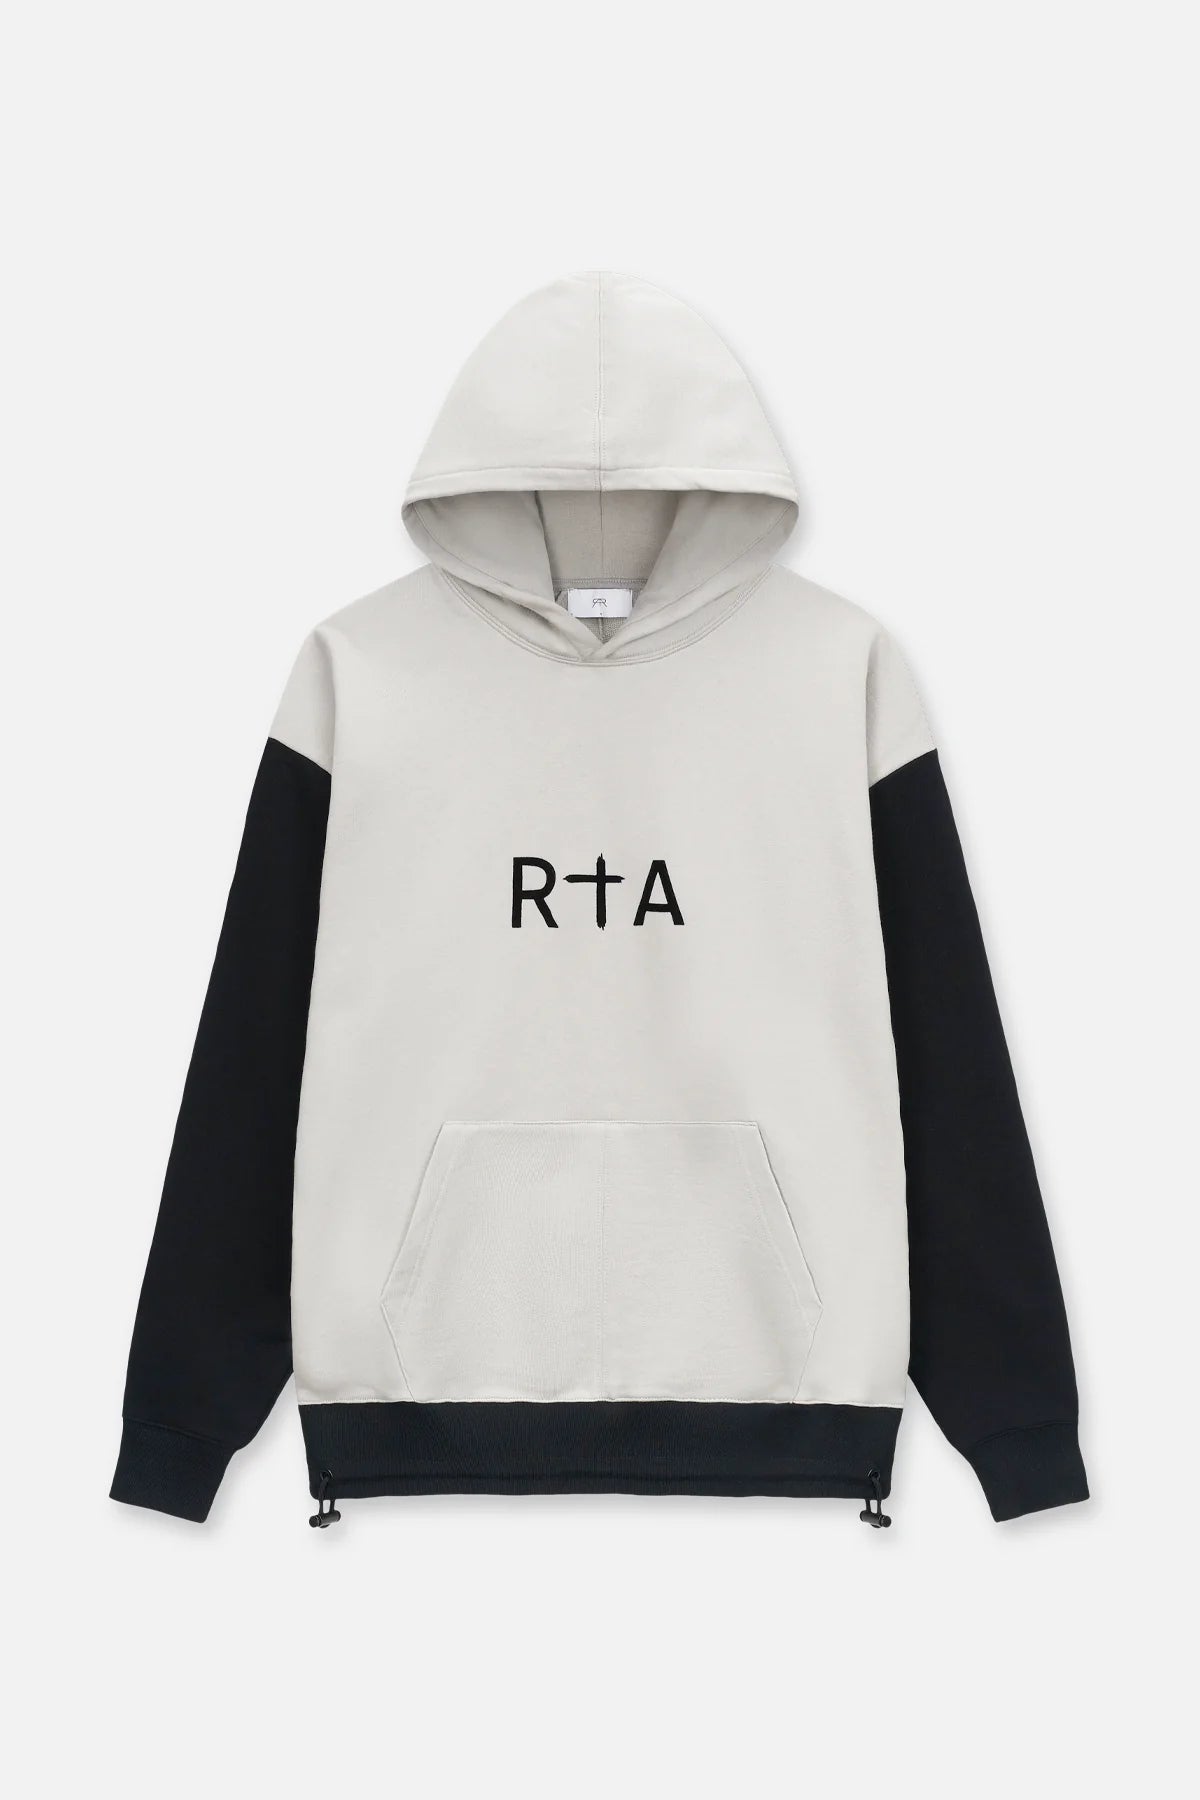 RTA Oversized Hoodie Grey Black Combo